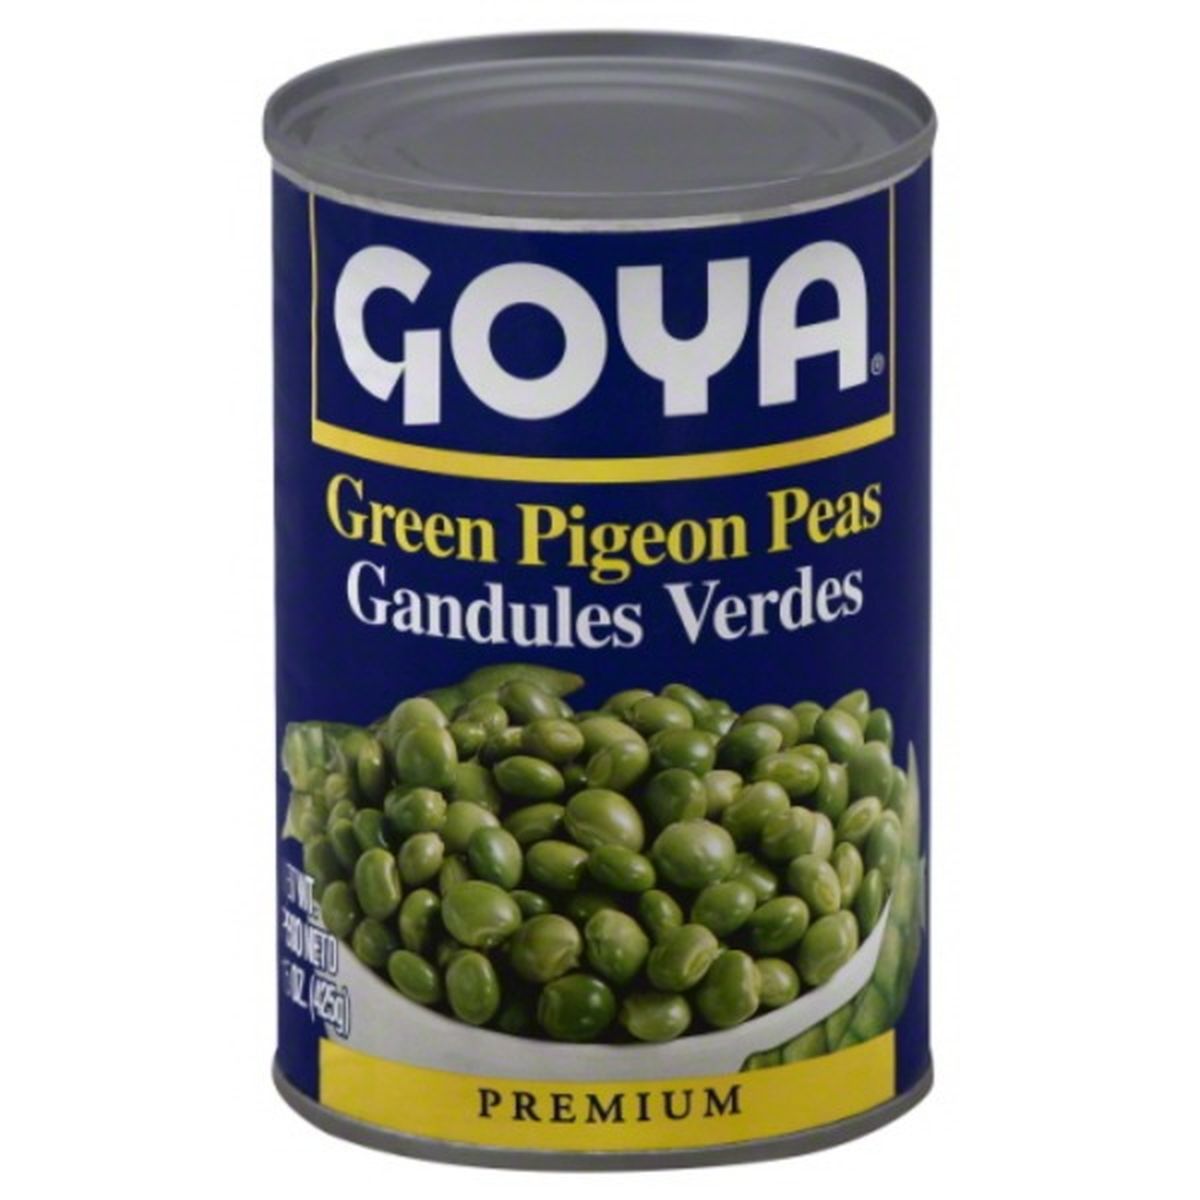 Calories in Goya Pigeon Peas, Green, Premium